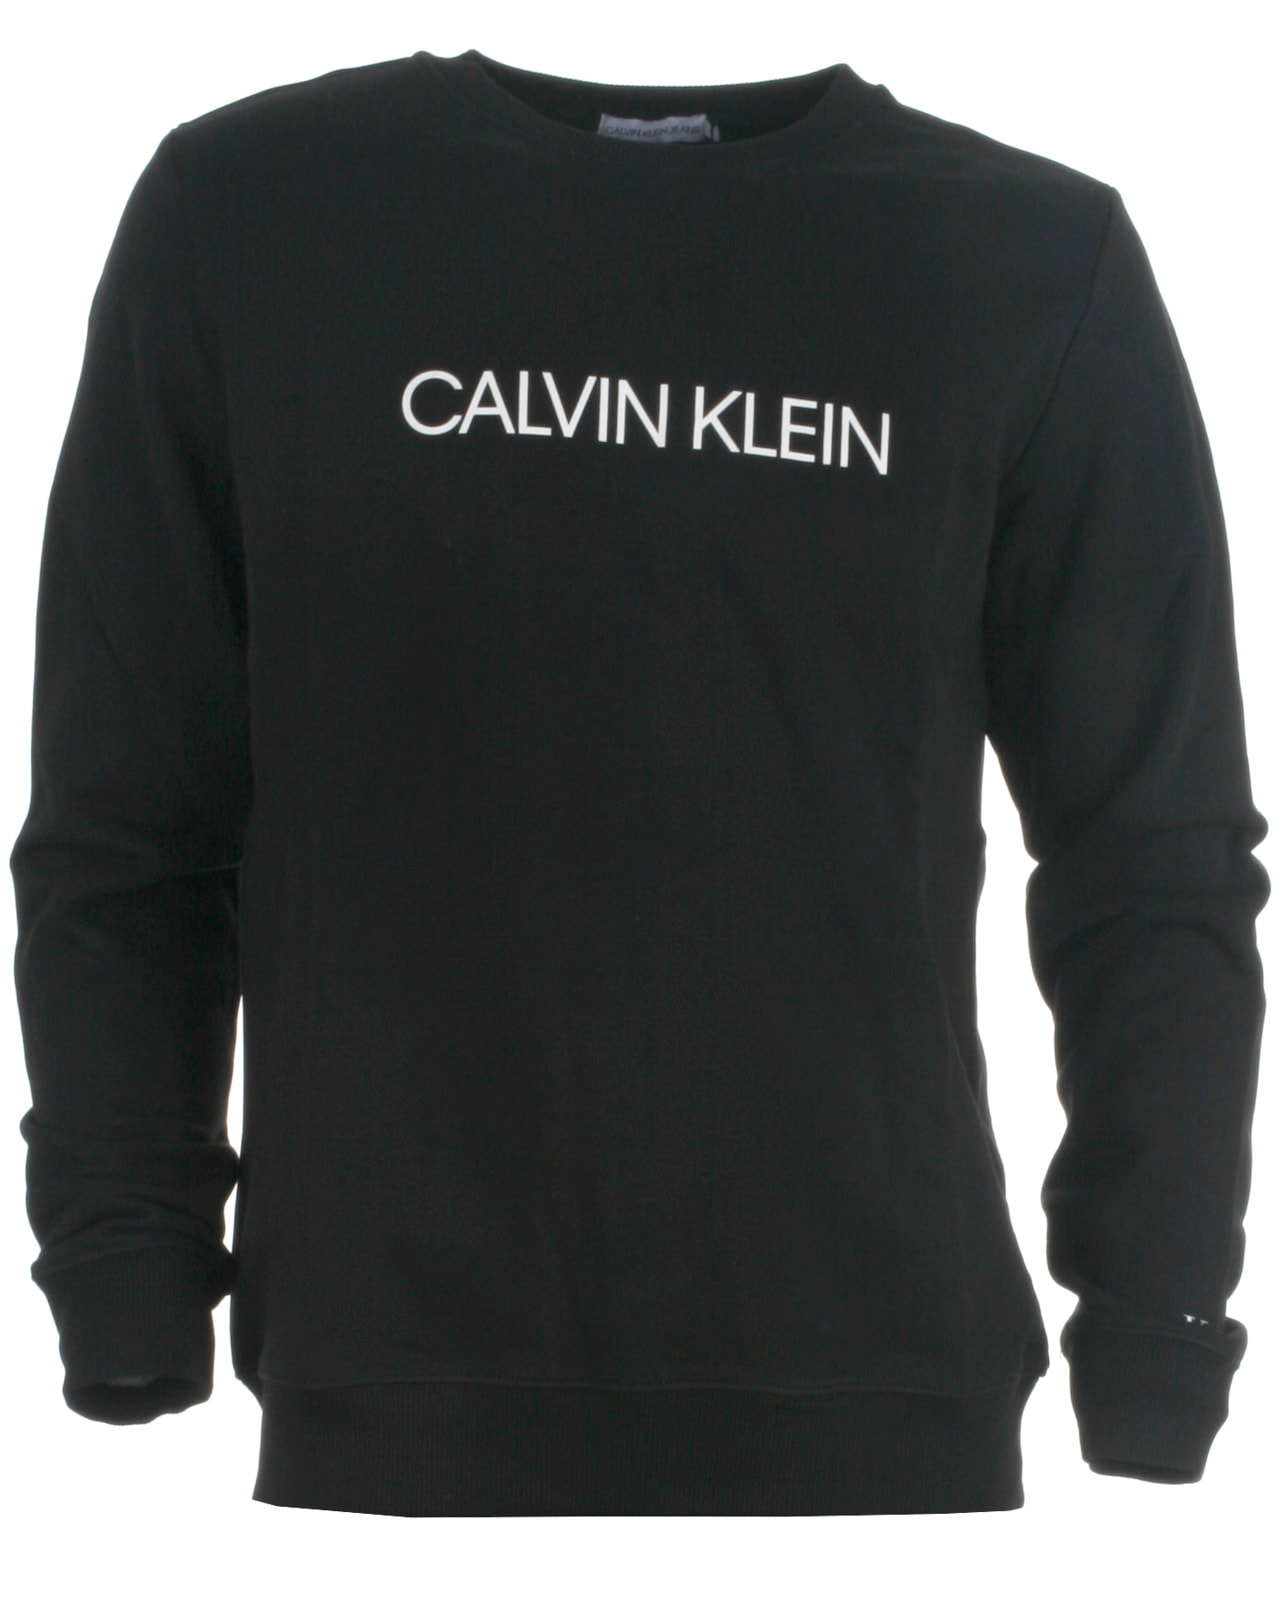 smøre Berigelse Athletic Calvin Klein sweatshirt, black. Smarte og trendy overdele til børn, teens  og voksne